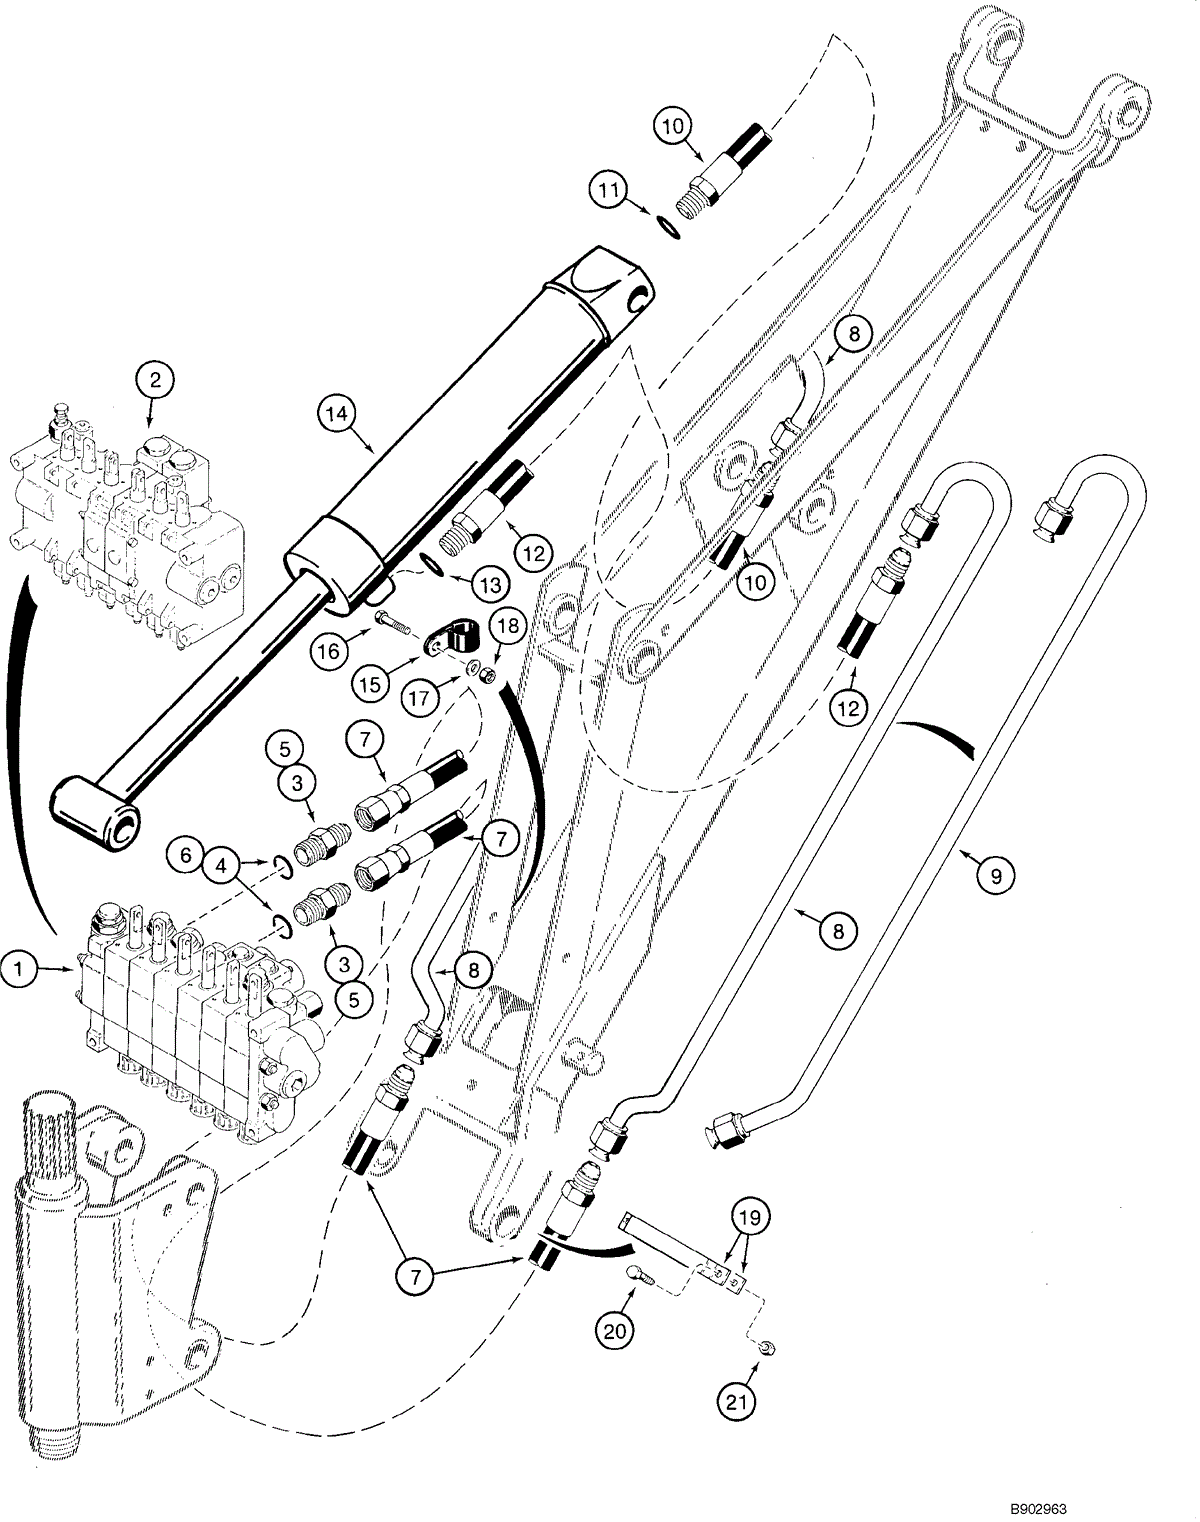 case 1845c wiring diagram